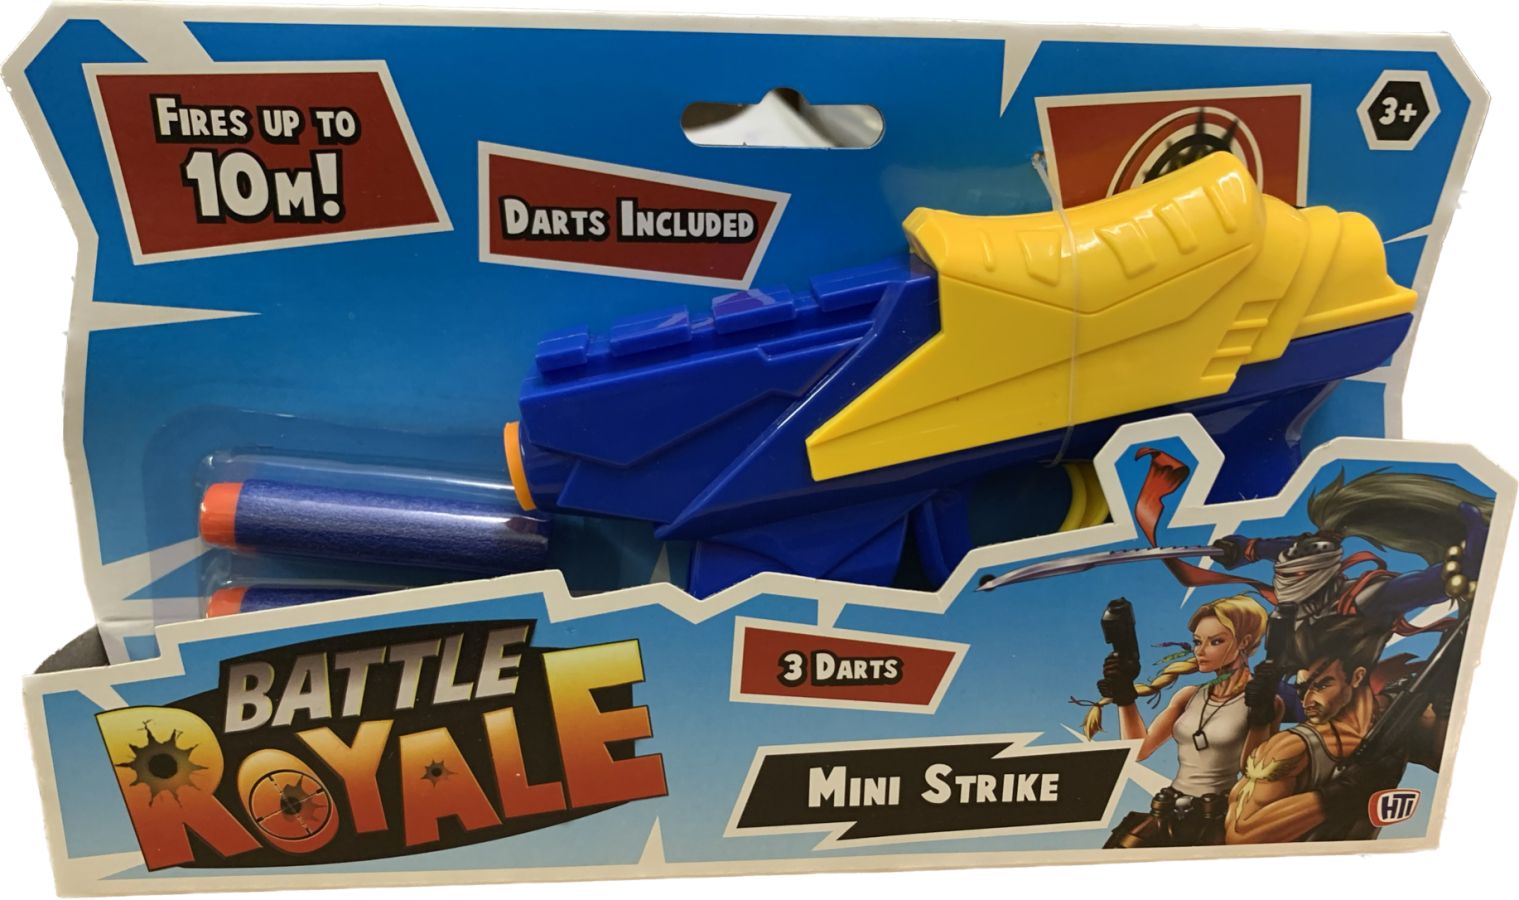 Mini Strike dart gun.